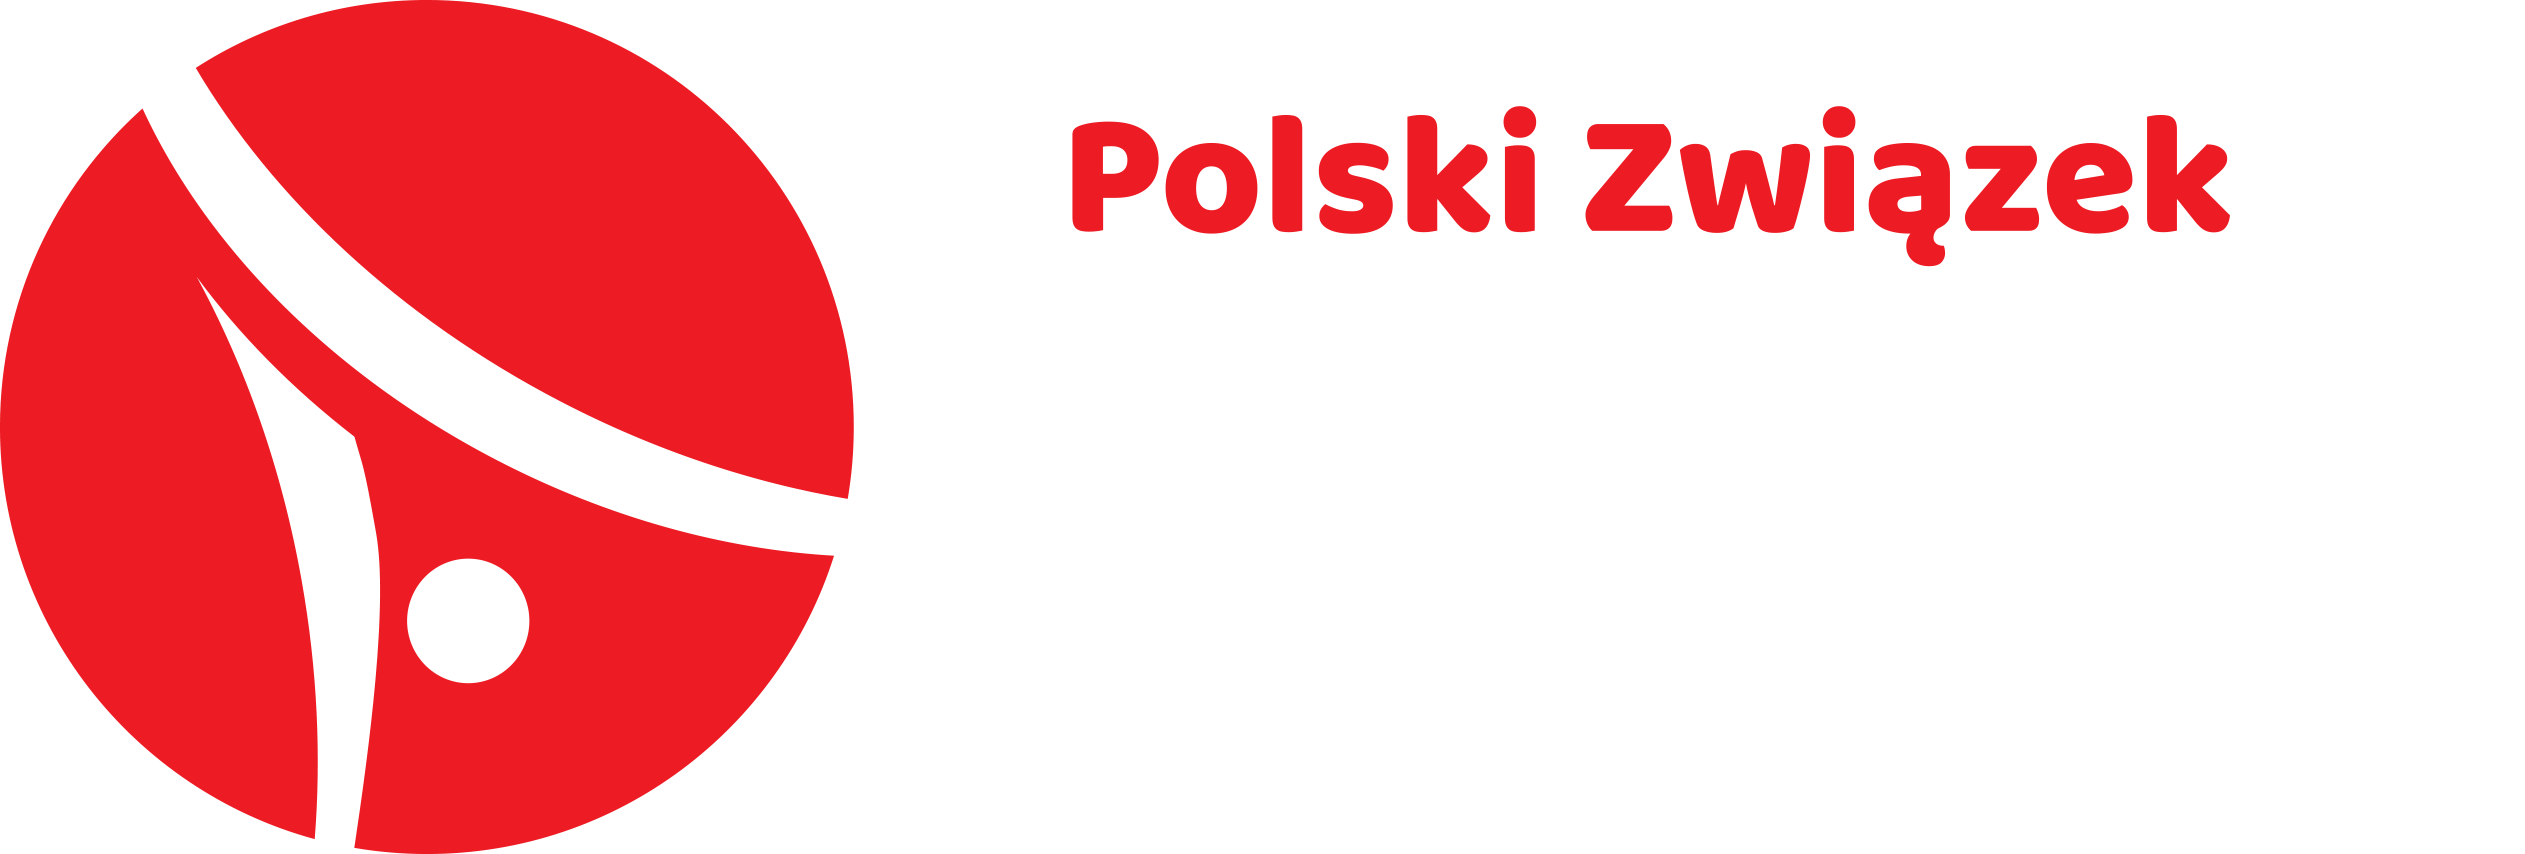 Polski Związek FitKid